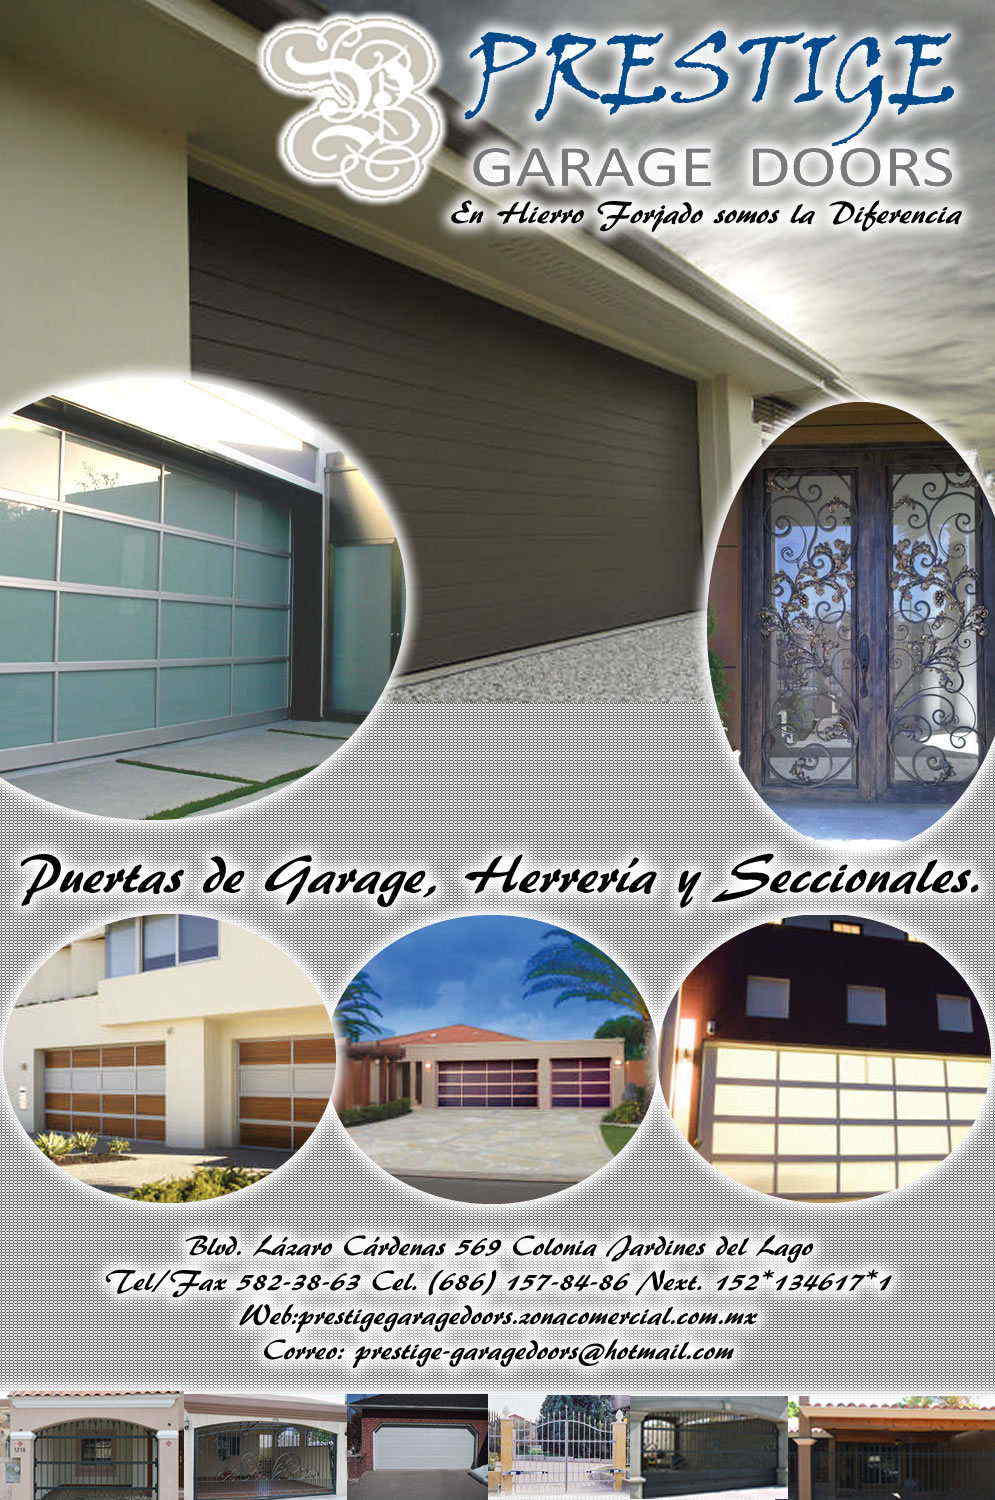 PRESTIGE GARAGE DOORS-PUERTAS DE GARAGE, HERRERIA Y SECCIONALES.